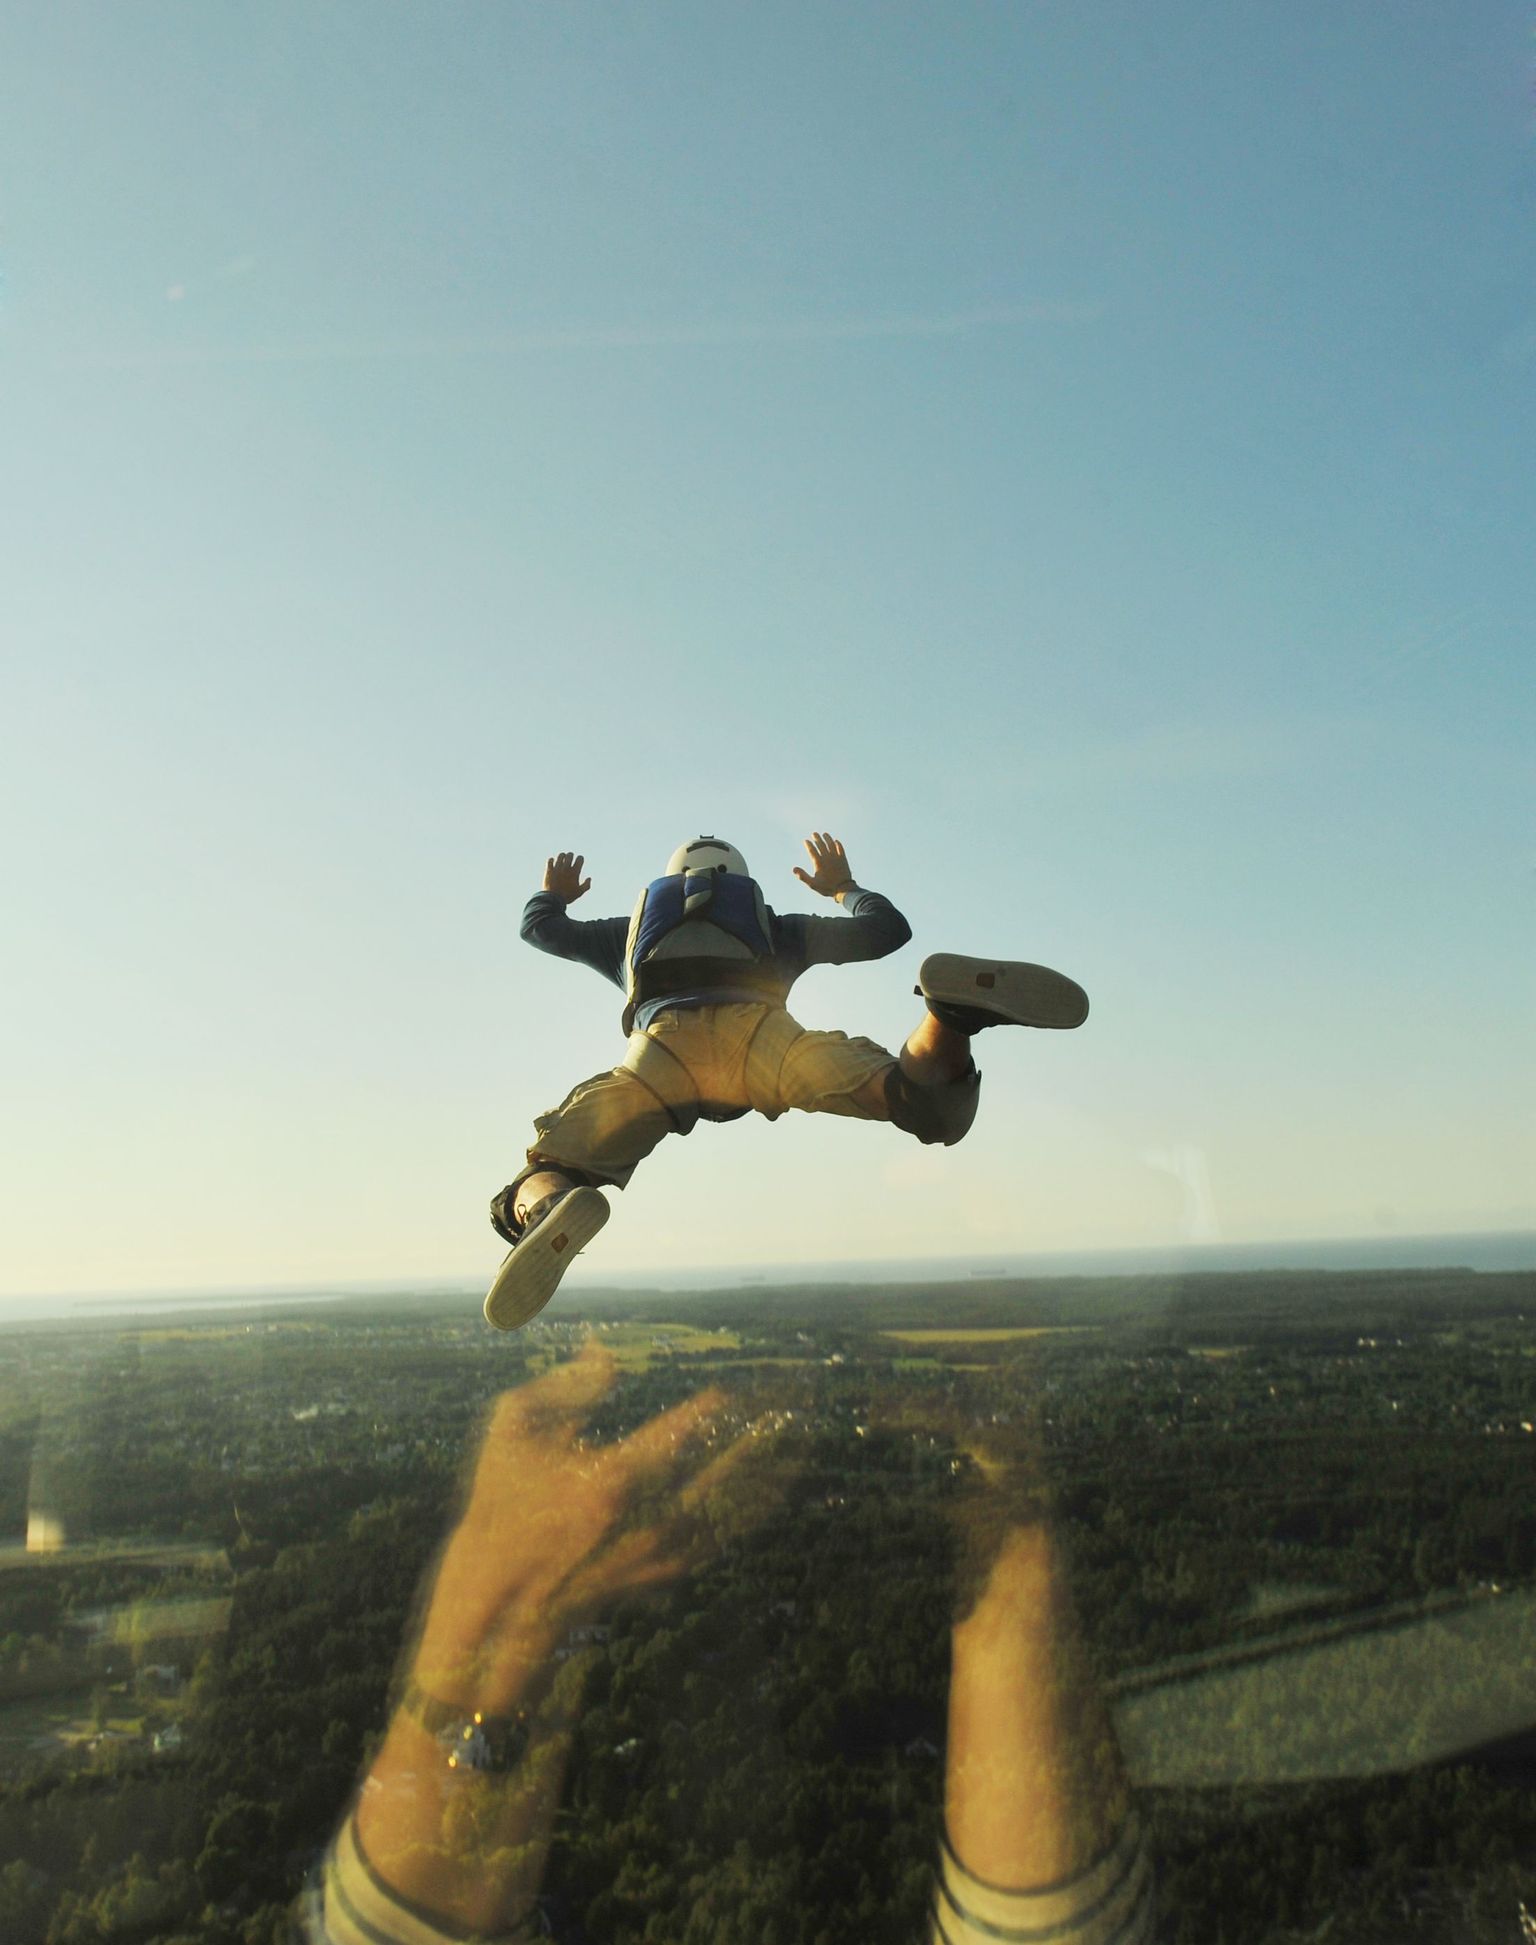 Затяжной прыжок с парашютом. Иллюстративный снимок.